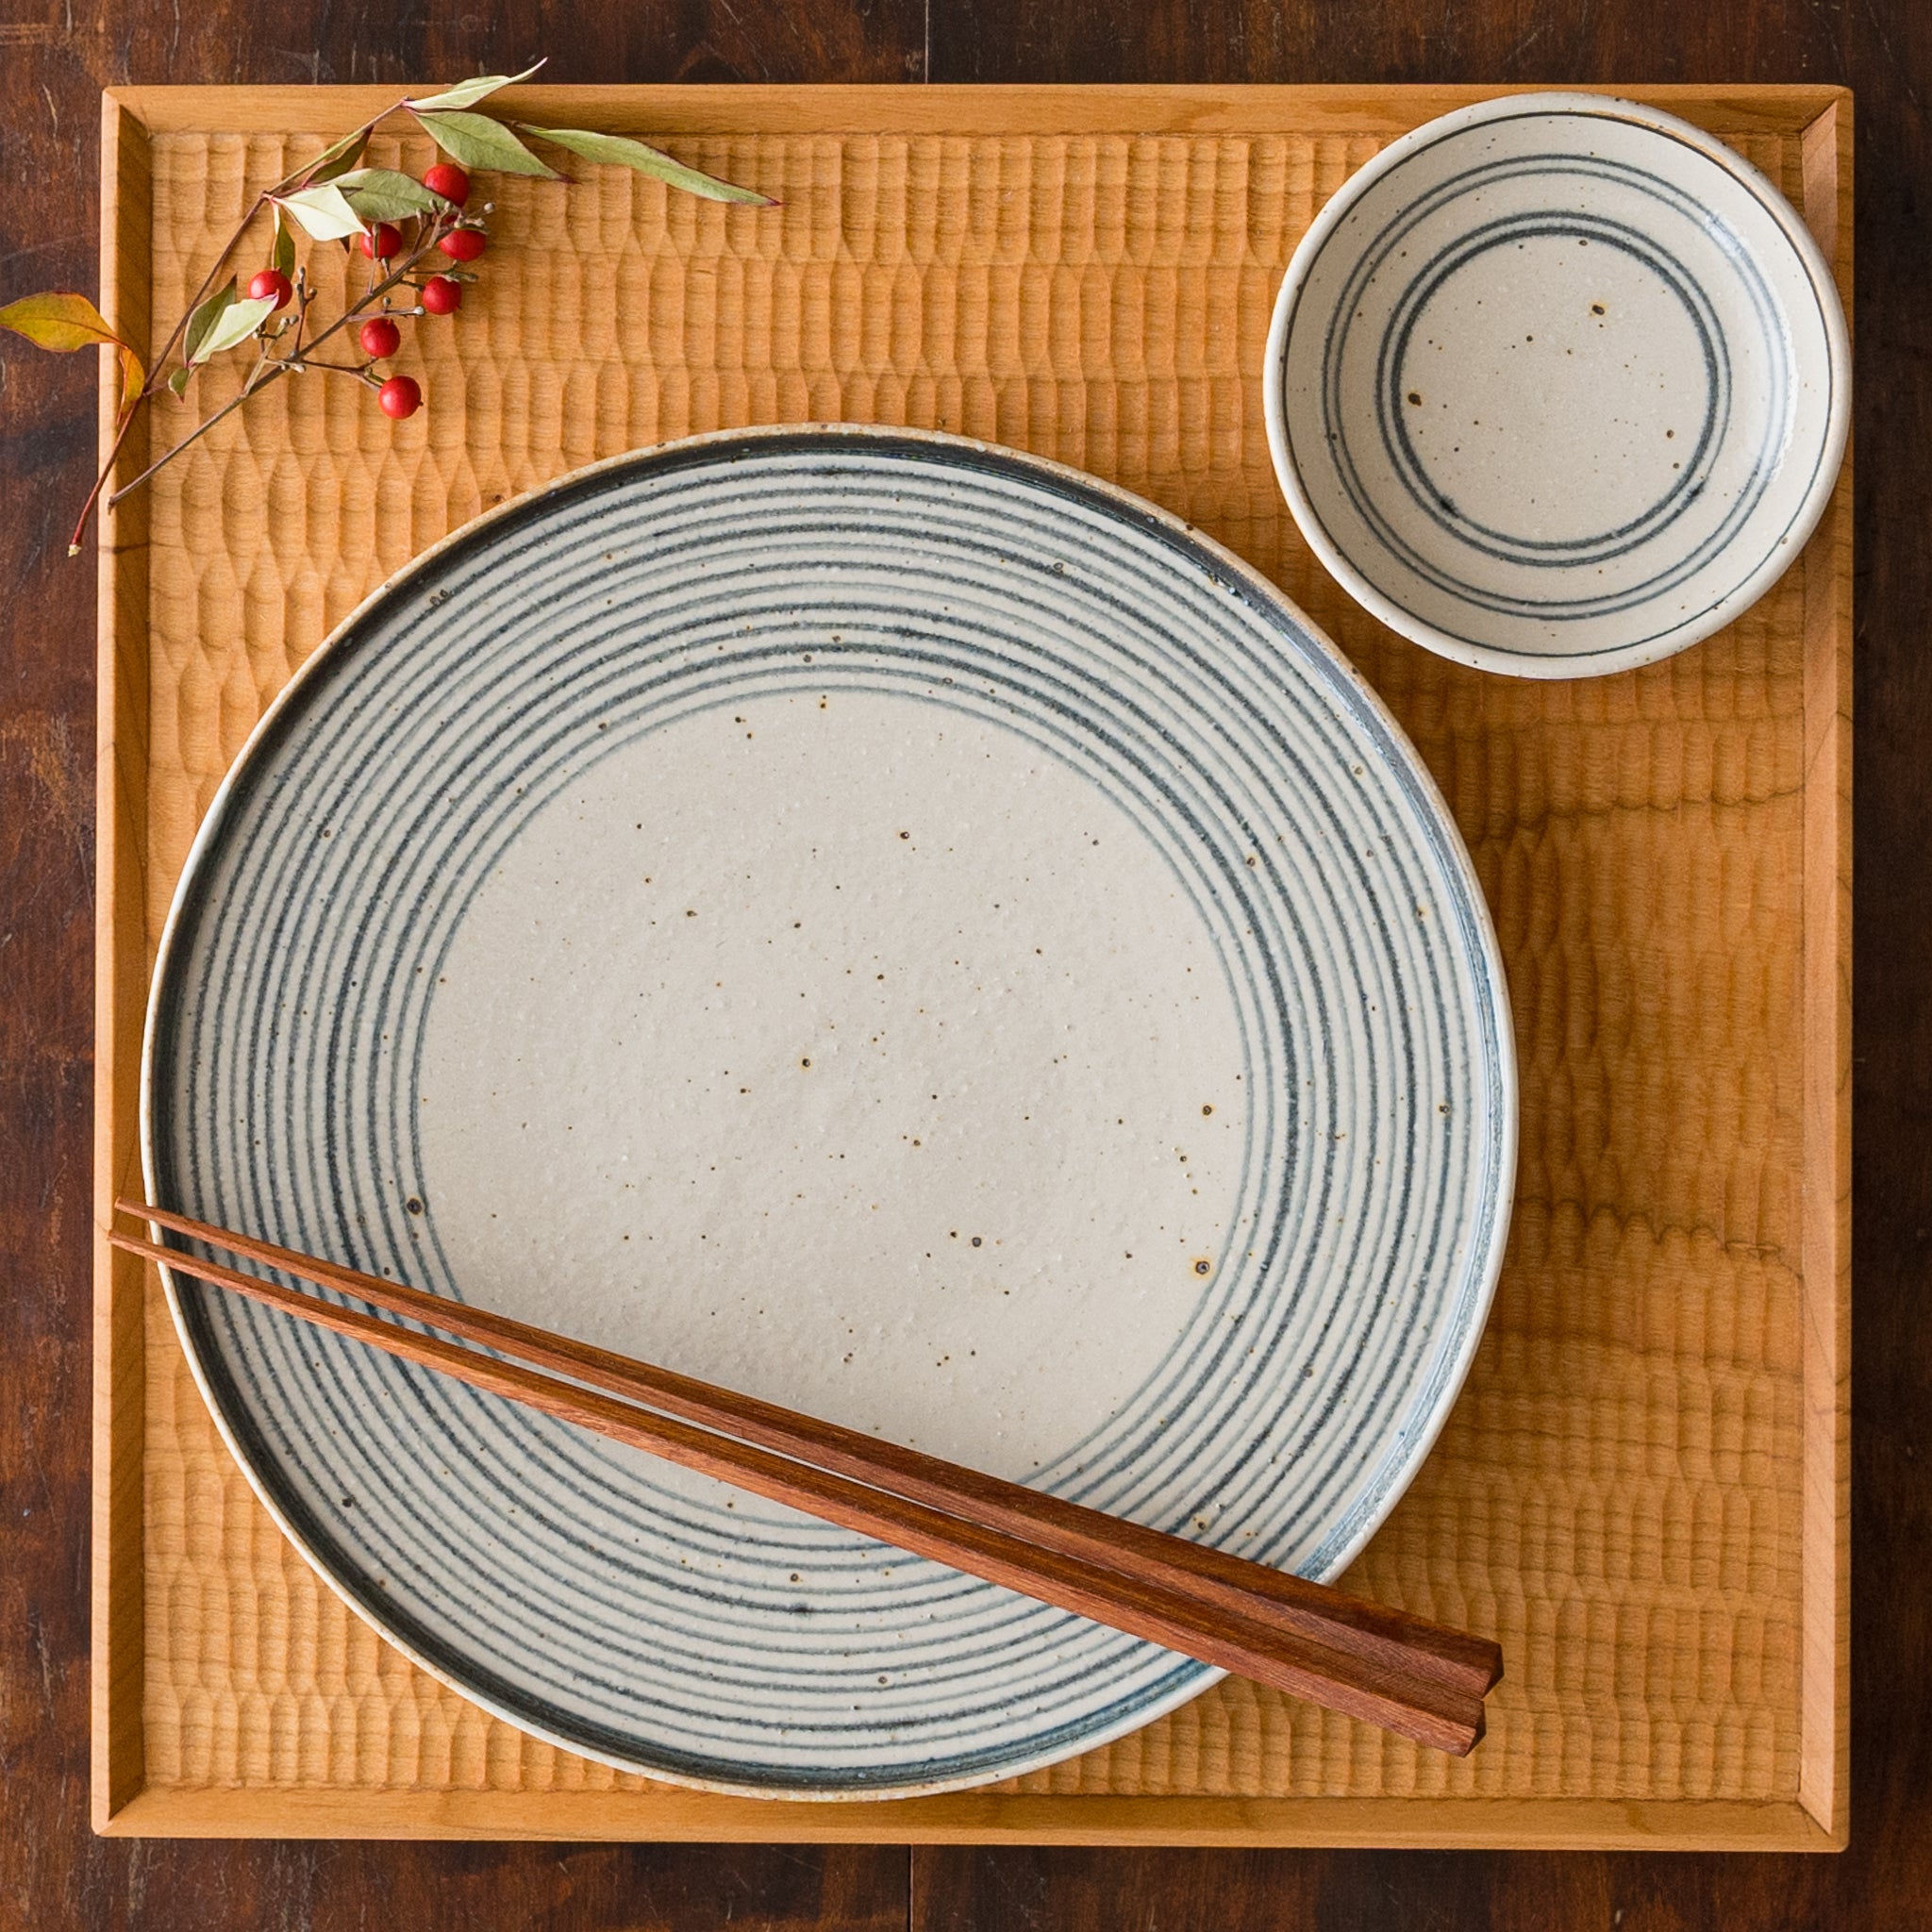 盛り付けたお料理が引き立つ冨本大輔さんの灰釉染付7寸平皿と3寸皿